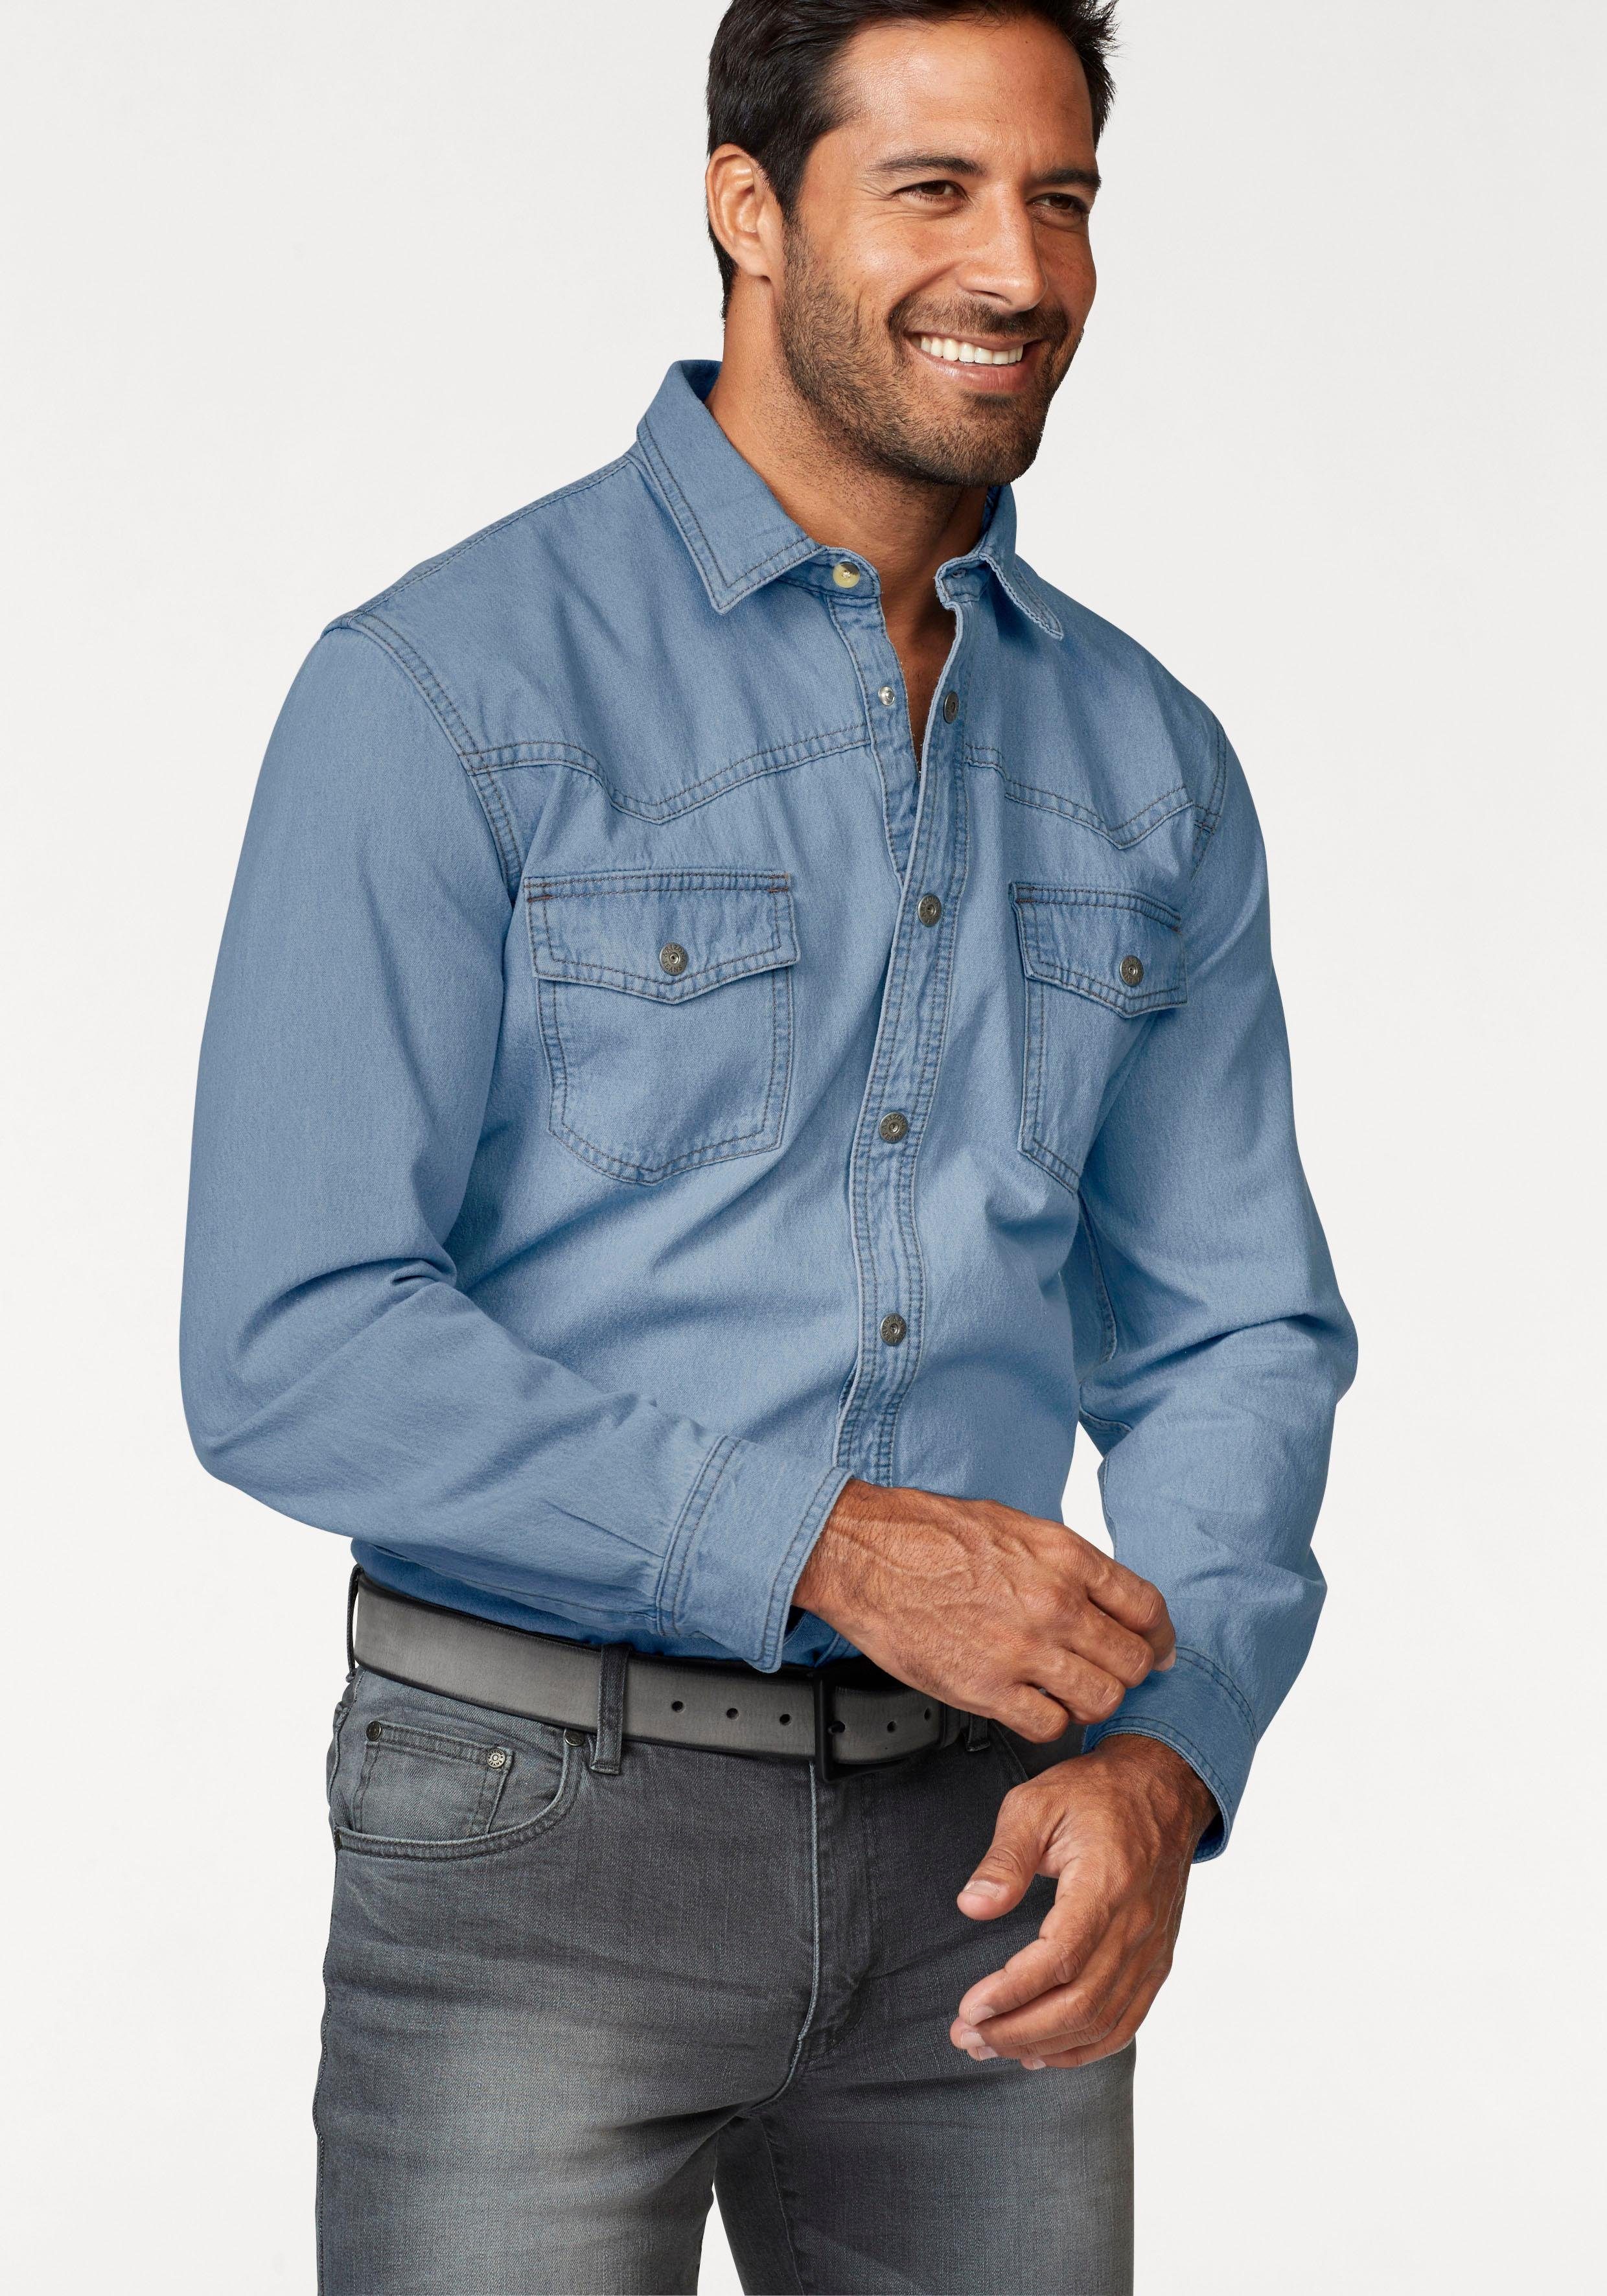 Джинсовые рубашки большие размеры. Рубашка мужская джинсовая. Джинсы с рубашкой. Мужская джинсовая рубашка с длинным рукавом. Мужчина в рубашке.